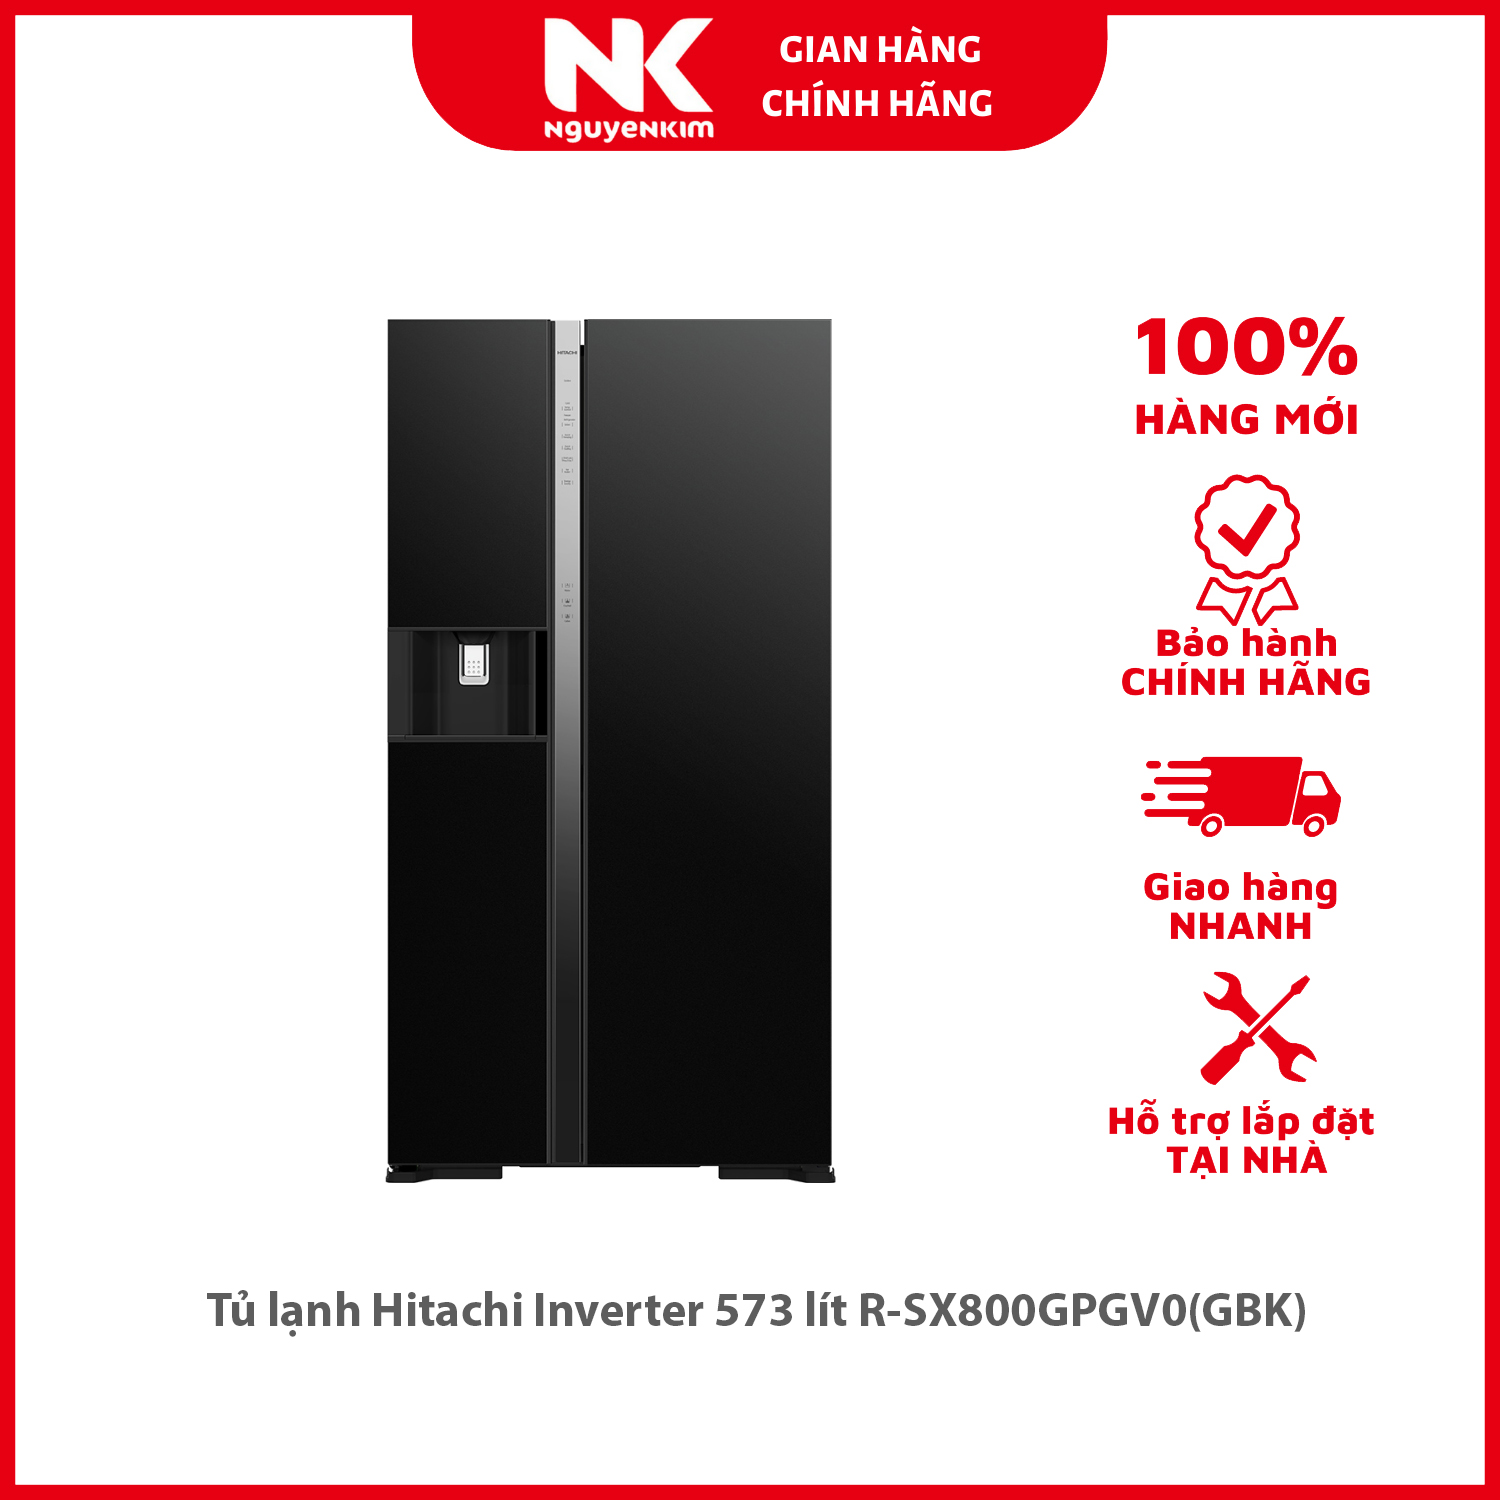 Tủ lạnh Hitachi Inverter 573 lít R-SX800GPGV0(GBK) - Hàng chính hãng [Giao hàng toàn quốc]